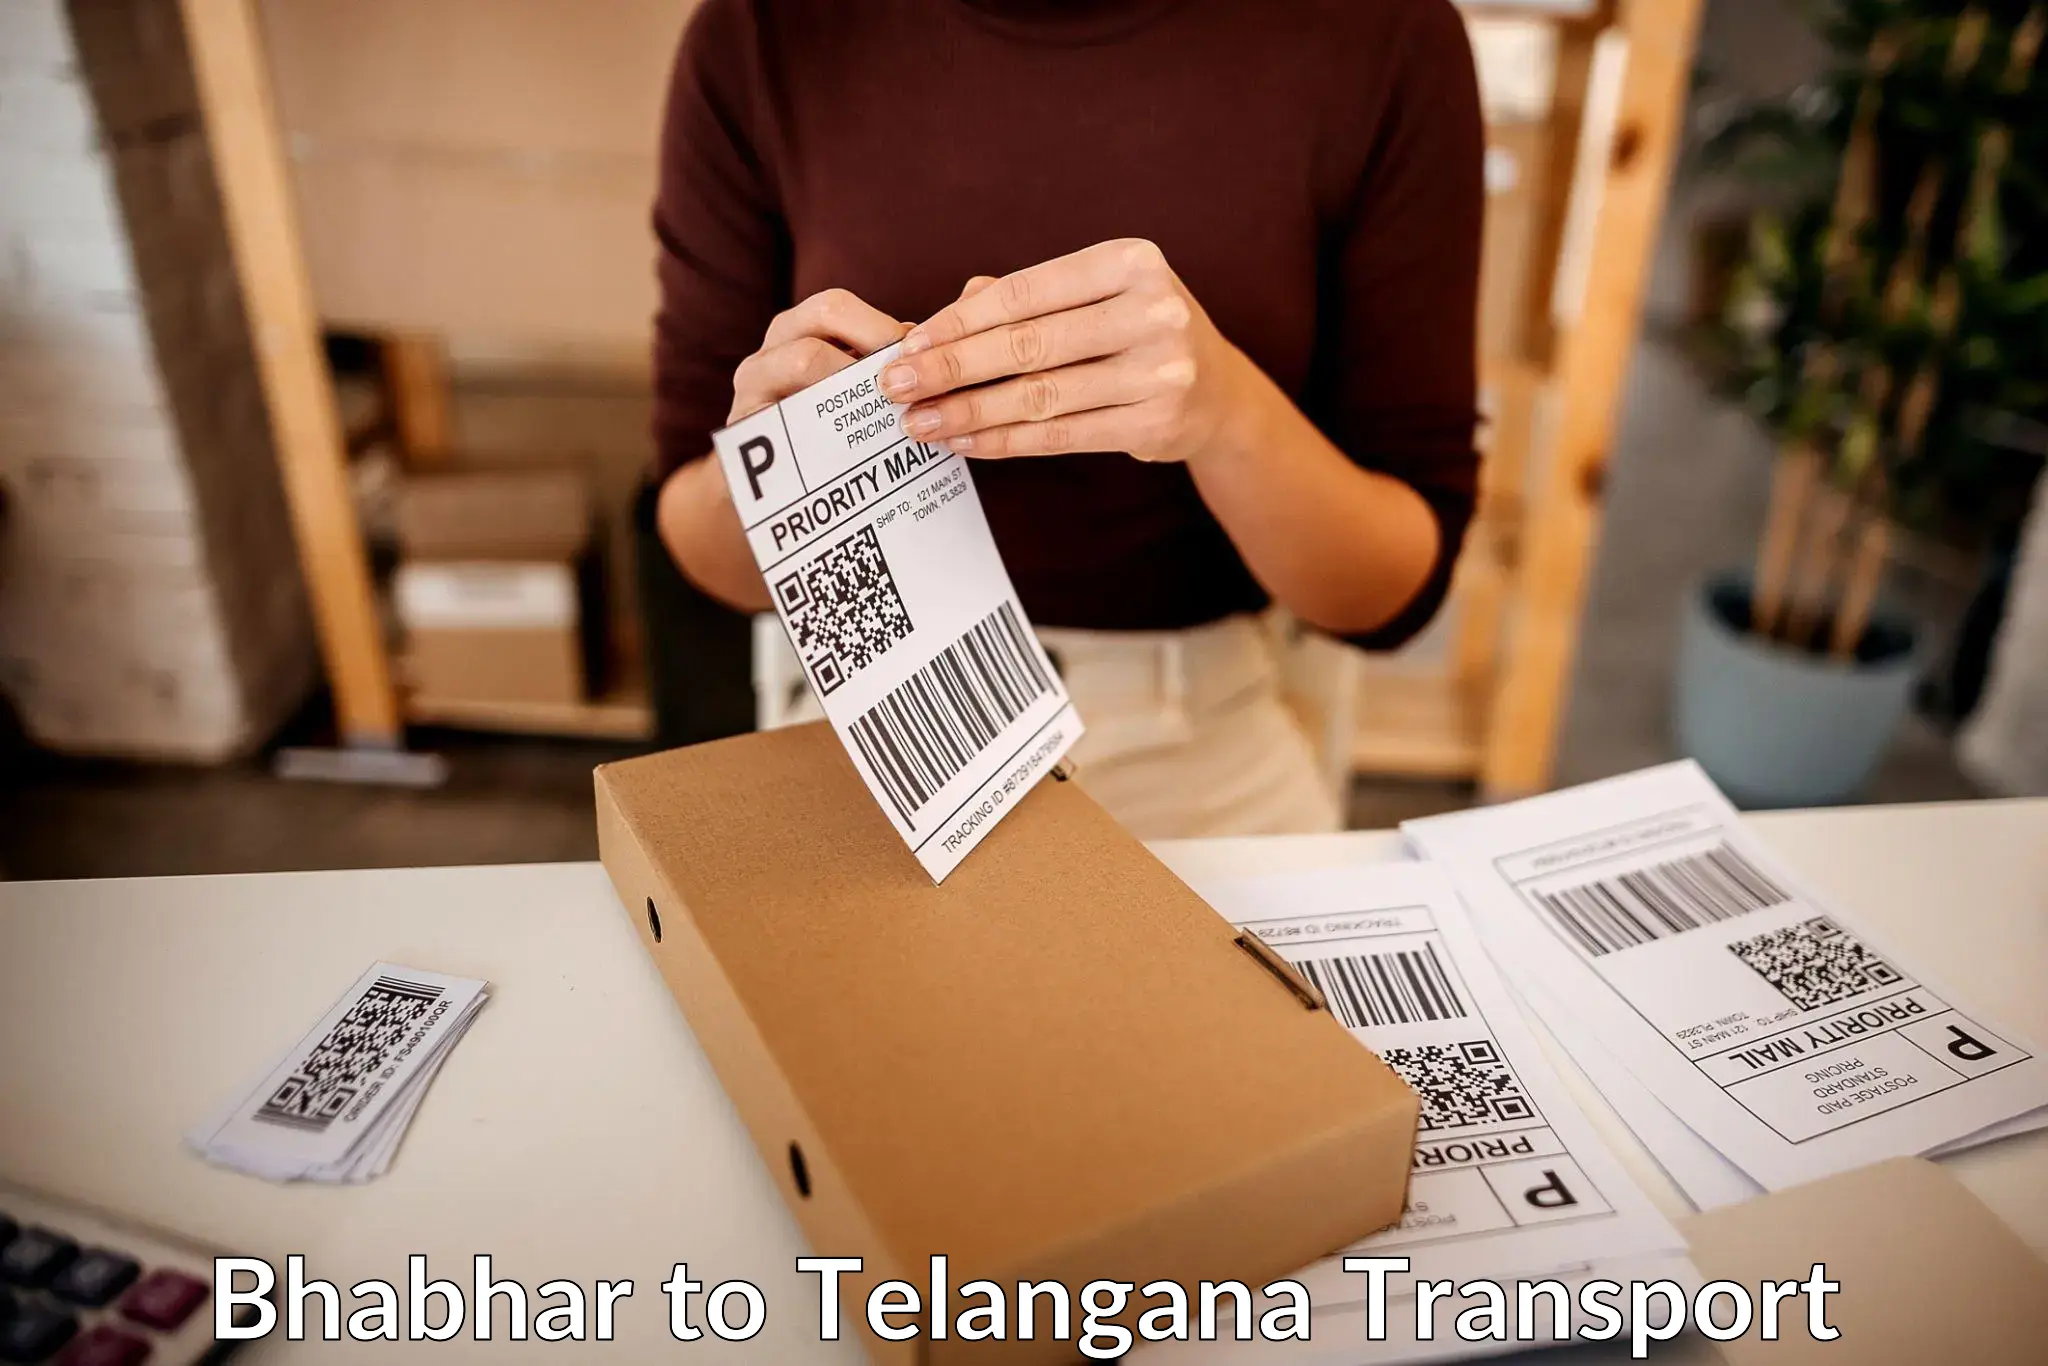 Furniture transport service Bhabhar to Veenavanka